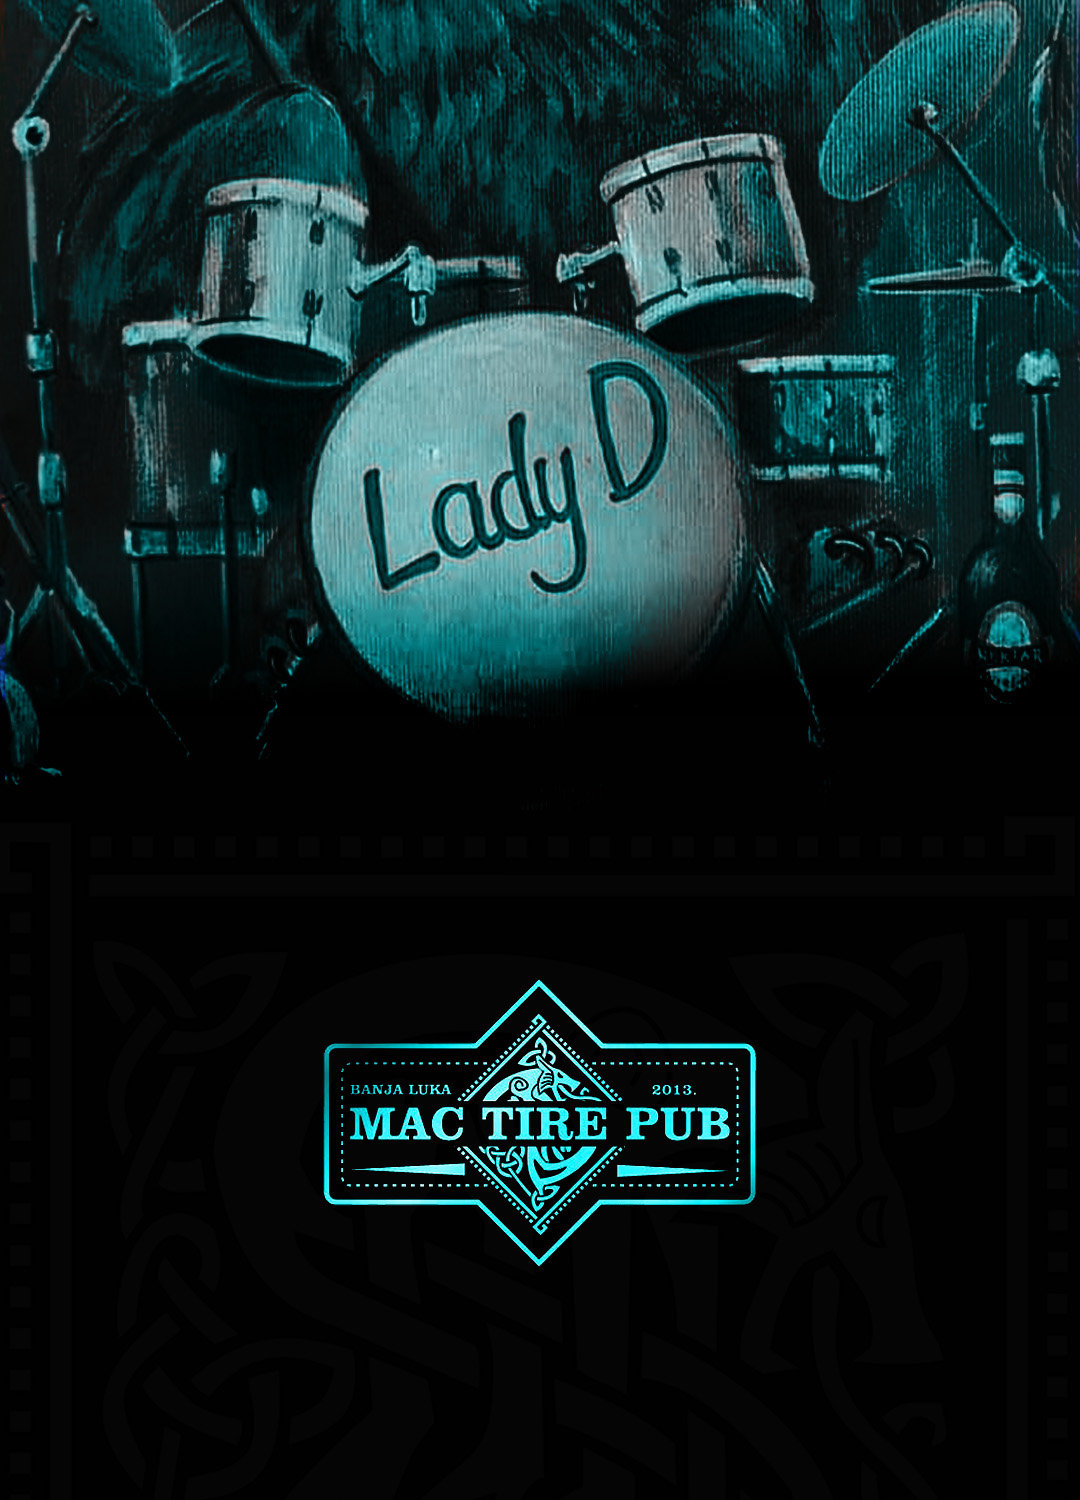 Lady D Mac Tire pub